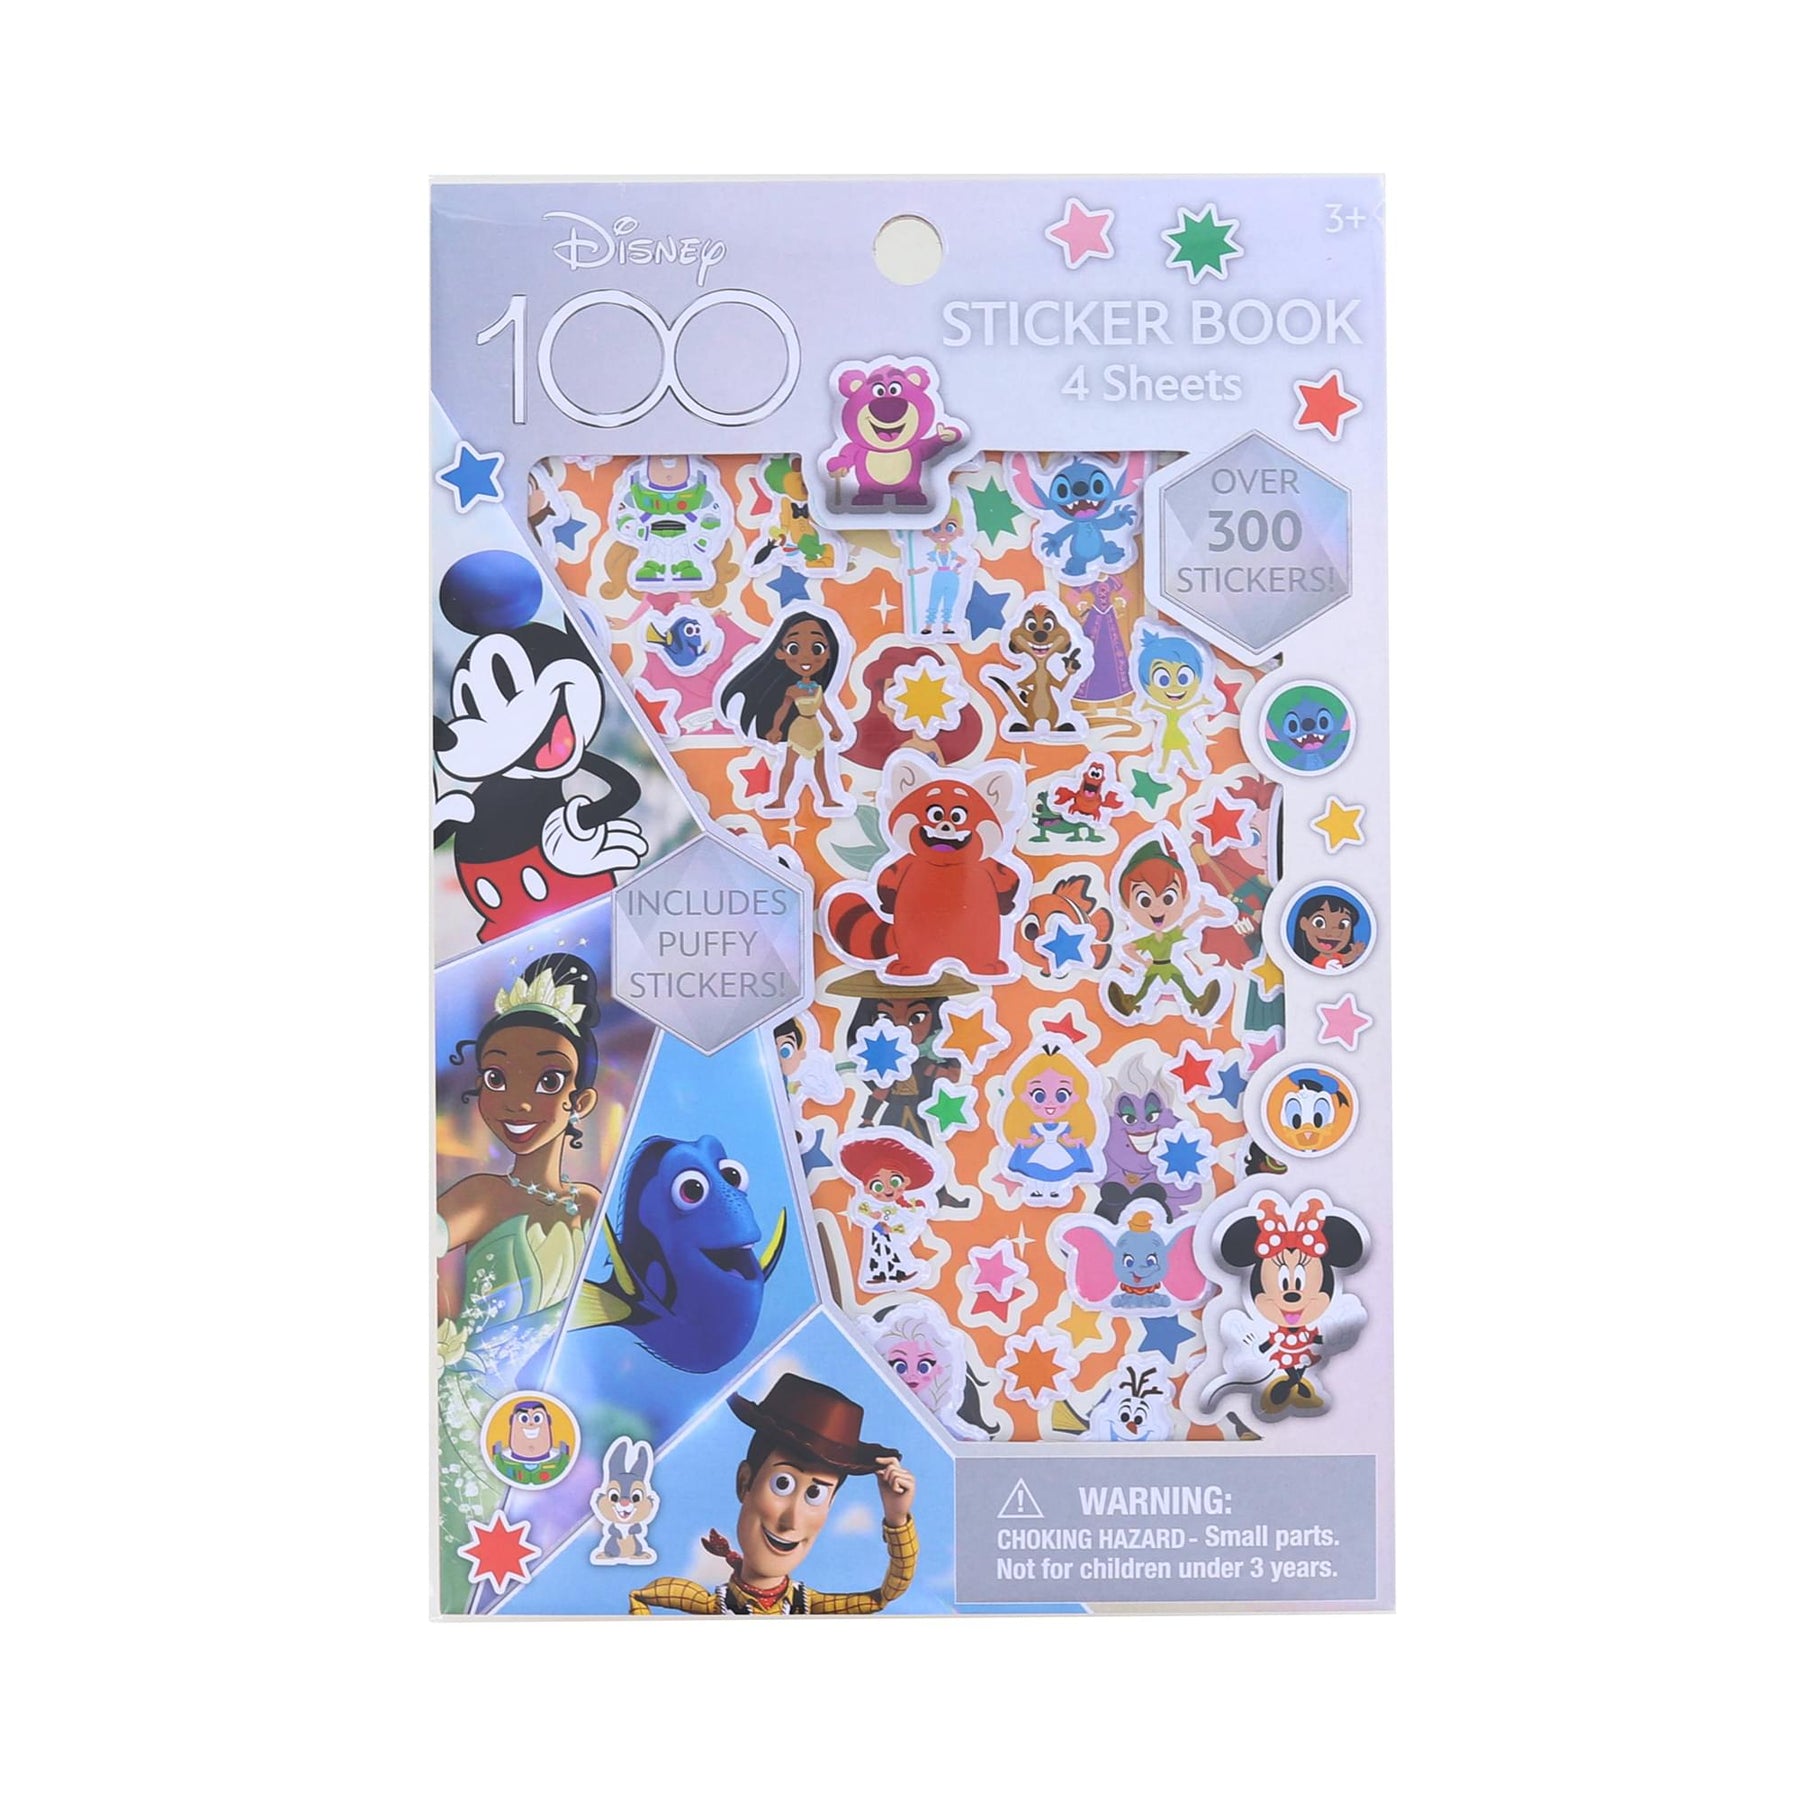 A Magical World Sticker Book: Over 500 Stickers and 12 Unique Scenes